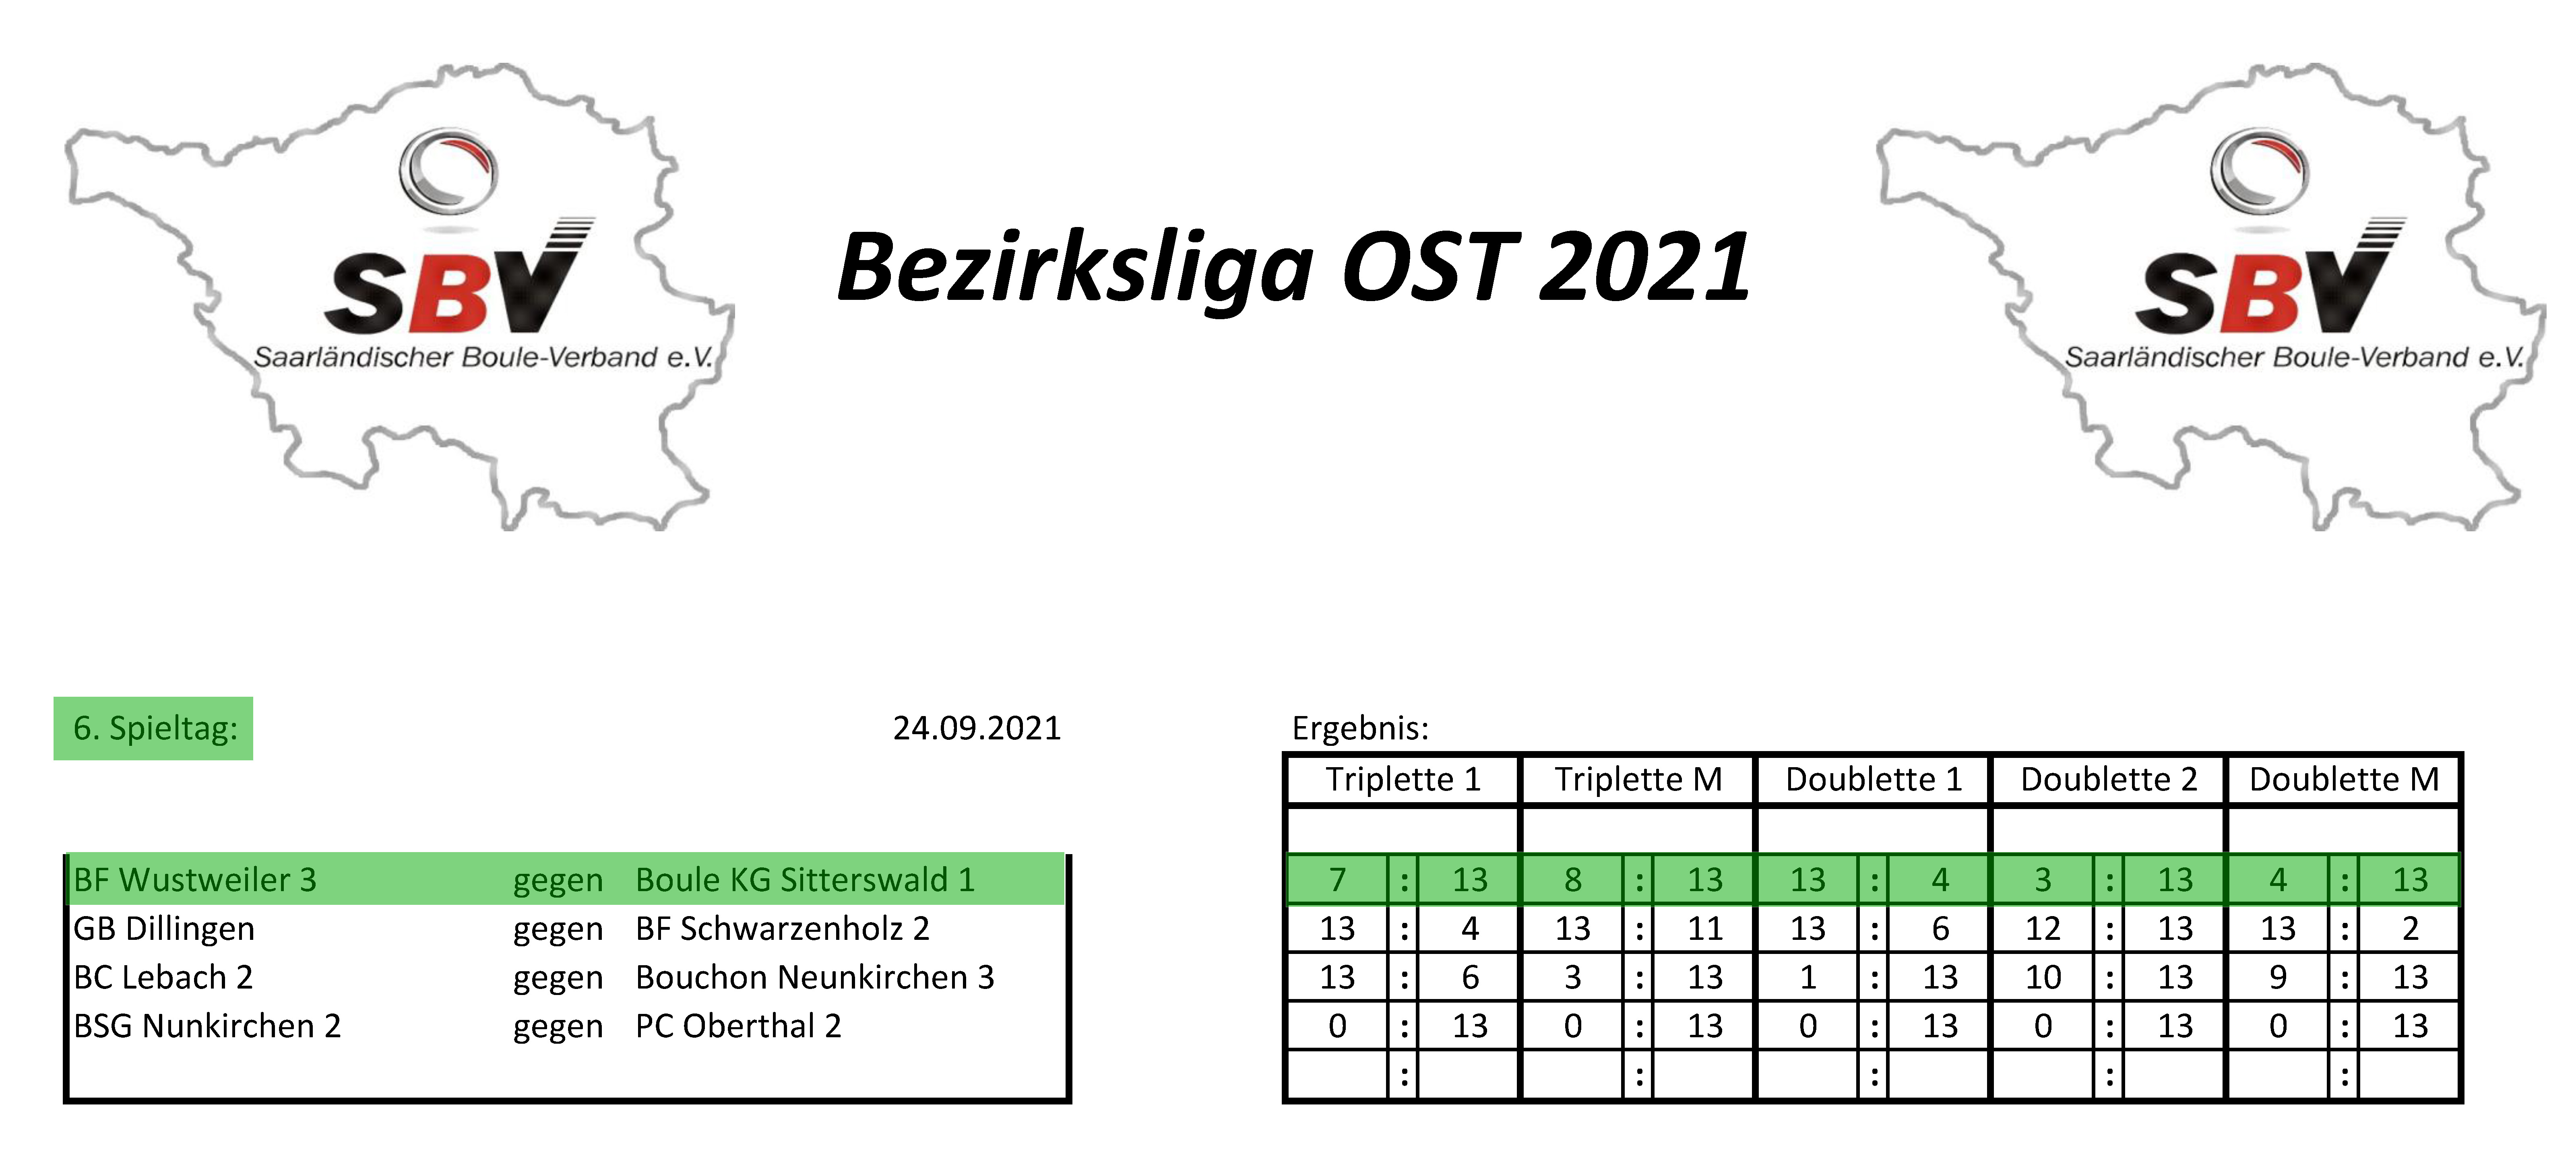 SBV Bezirksliga Ost 2021 Ergebnisse 6 Spieltag